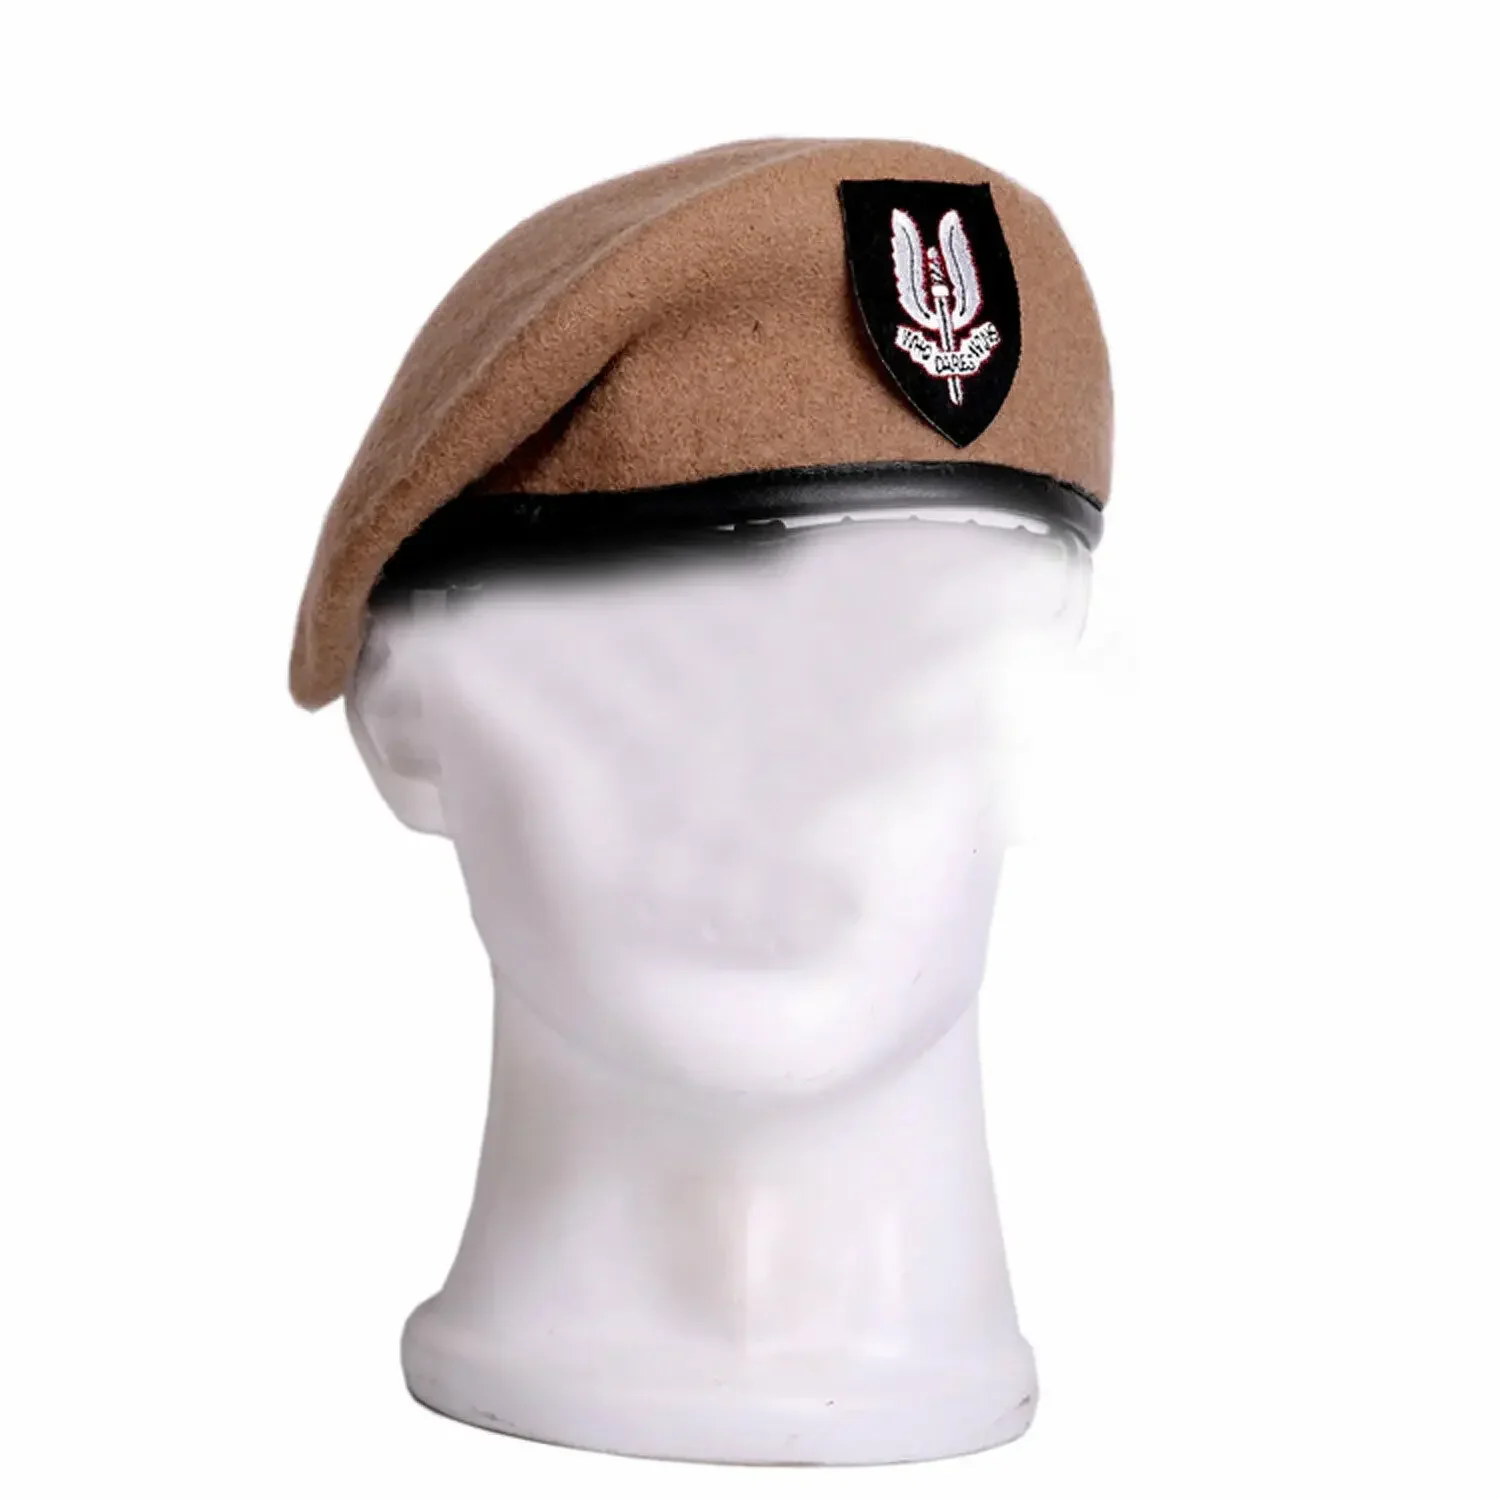 . Birleşik Krallık İngiliz Özel Kuvvetler Yün Bere erkek Askeri Kap Şapka Görüntü 2